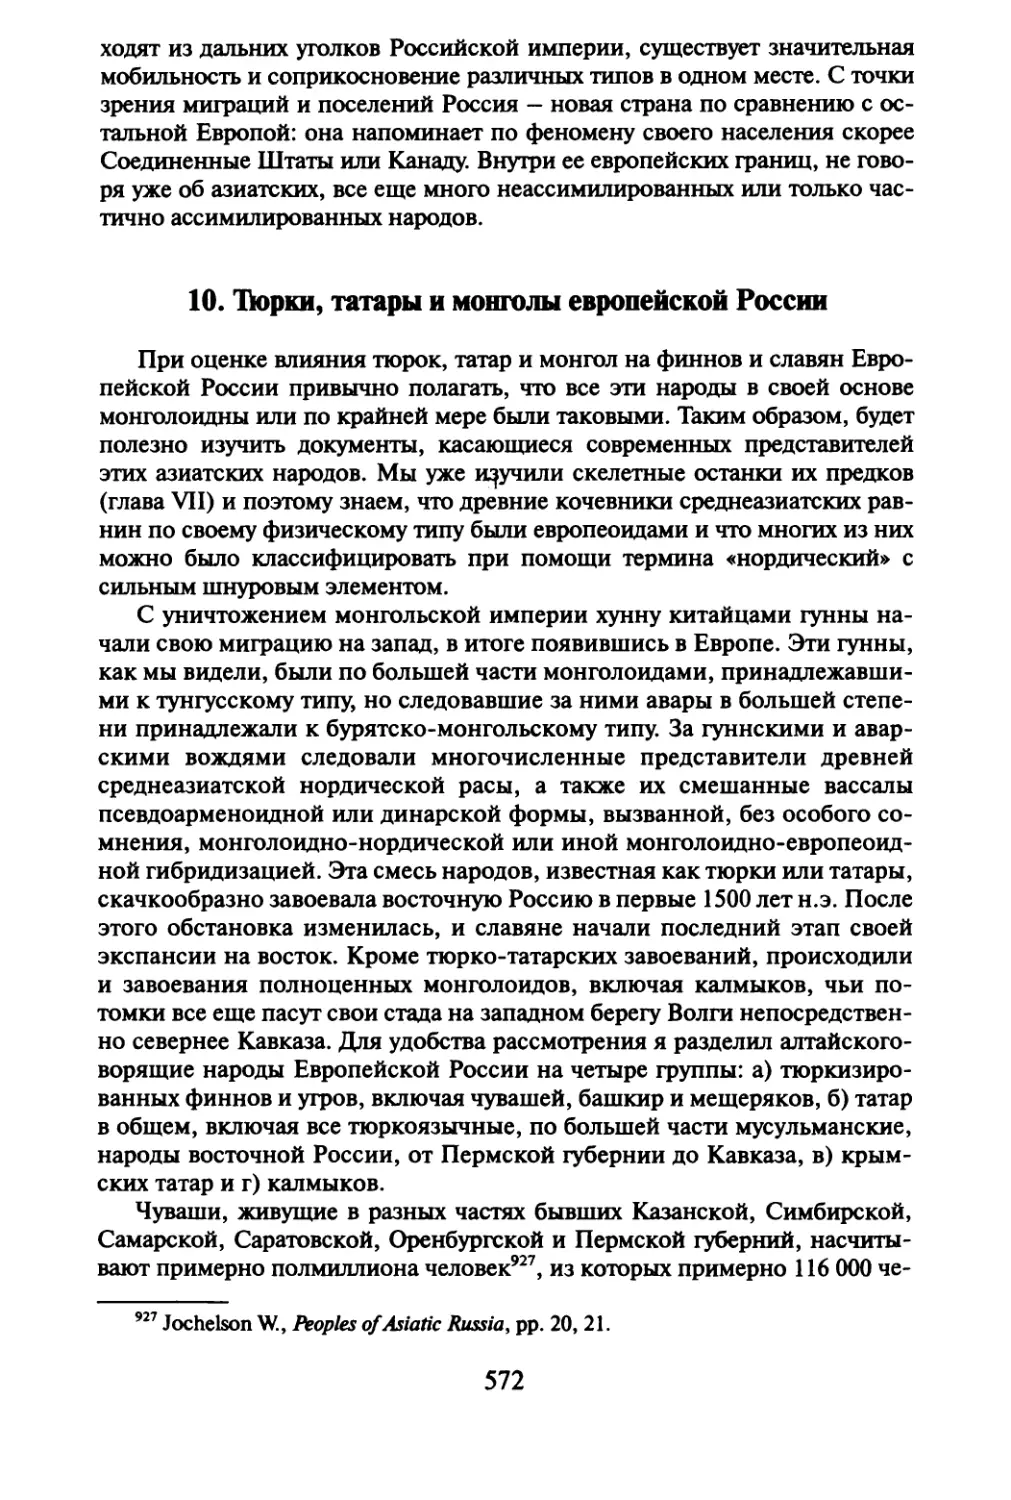 10. Тюрки, татары и монголы европейской России